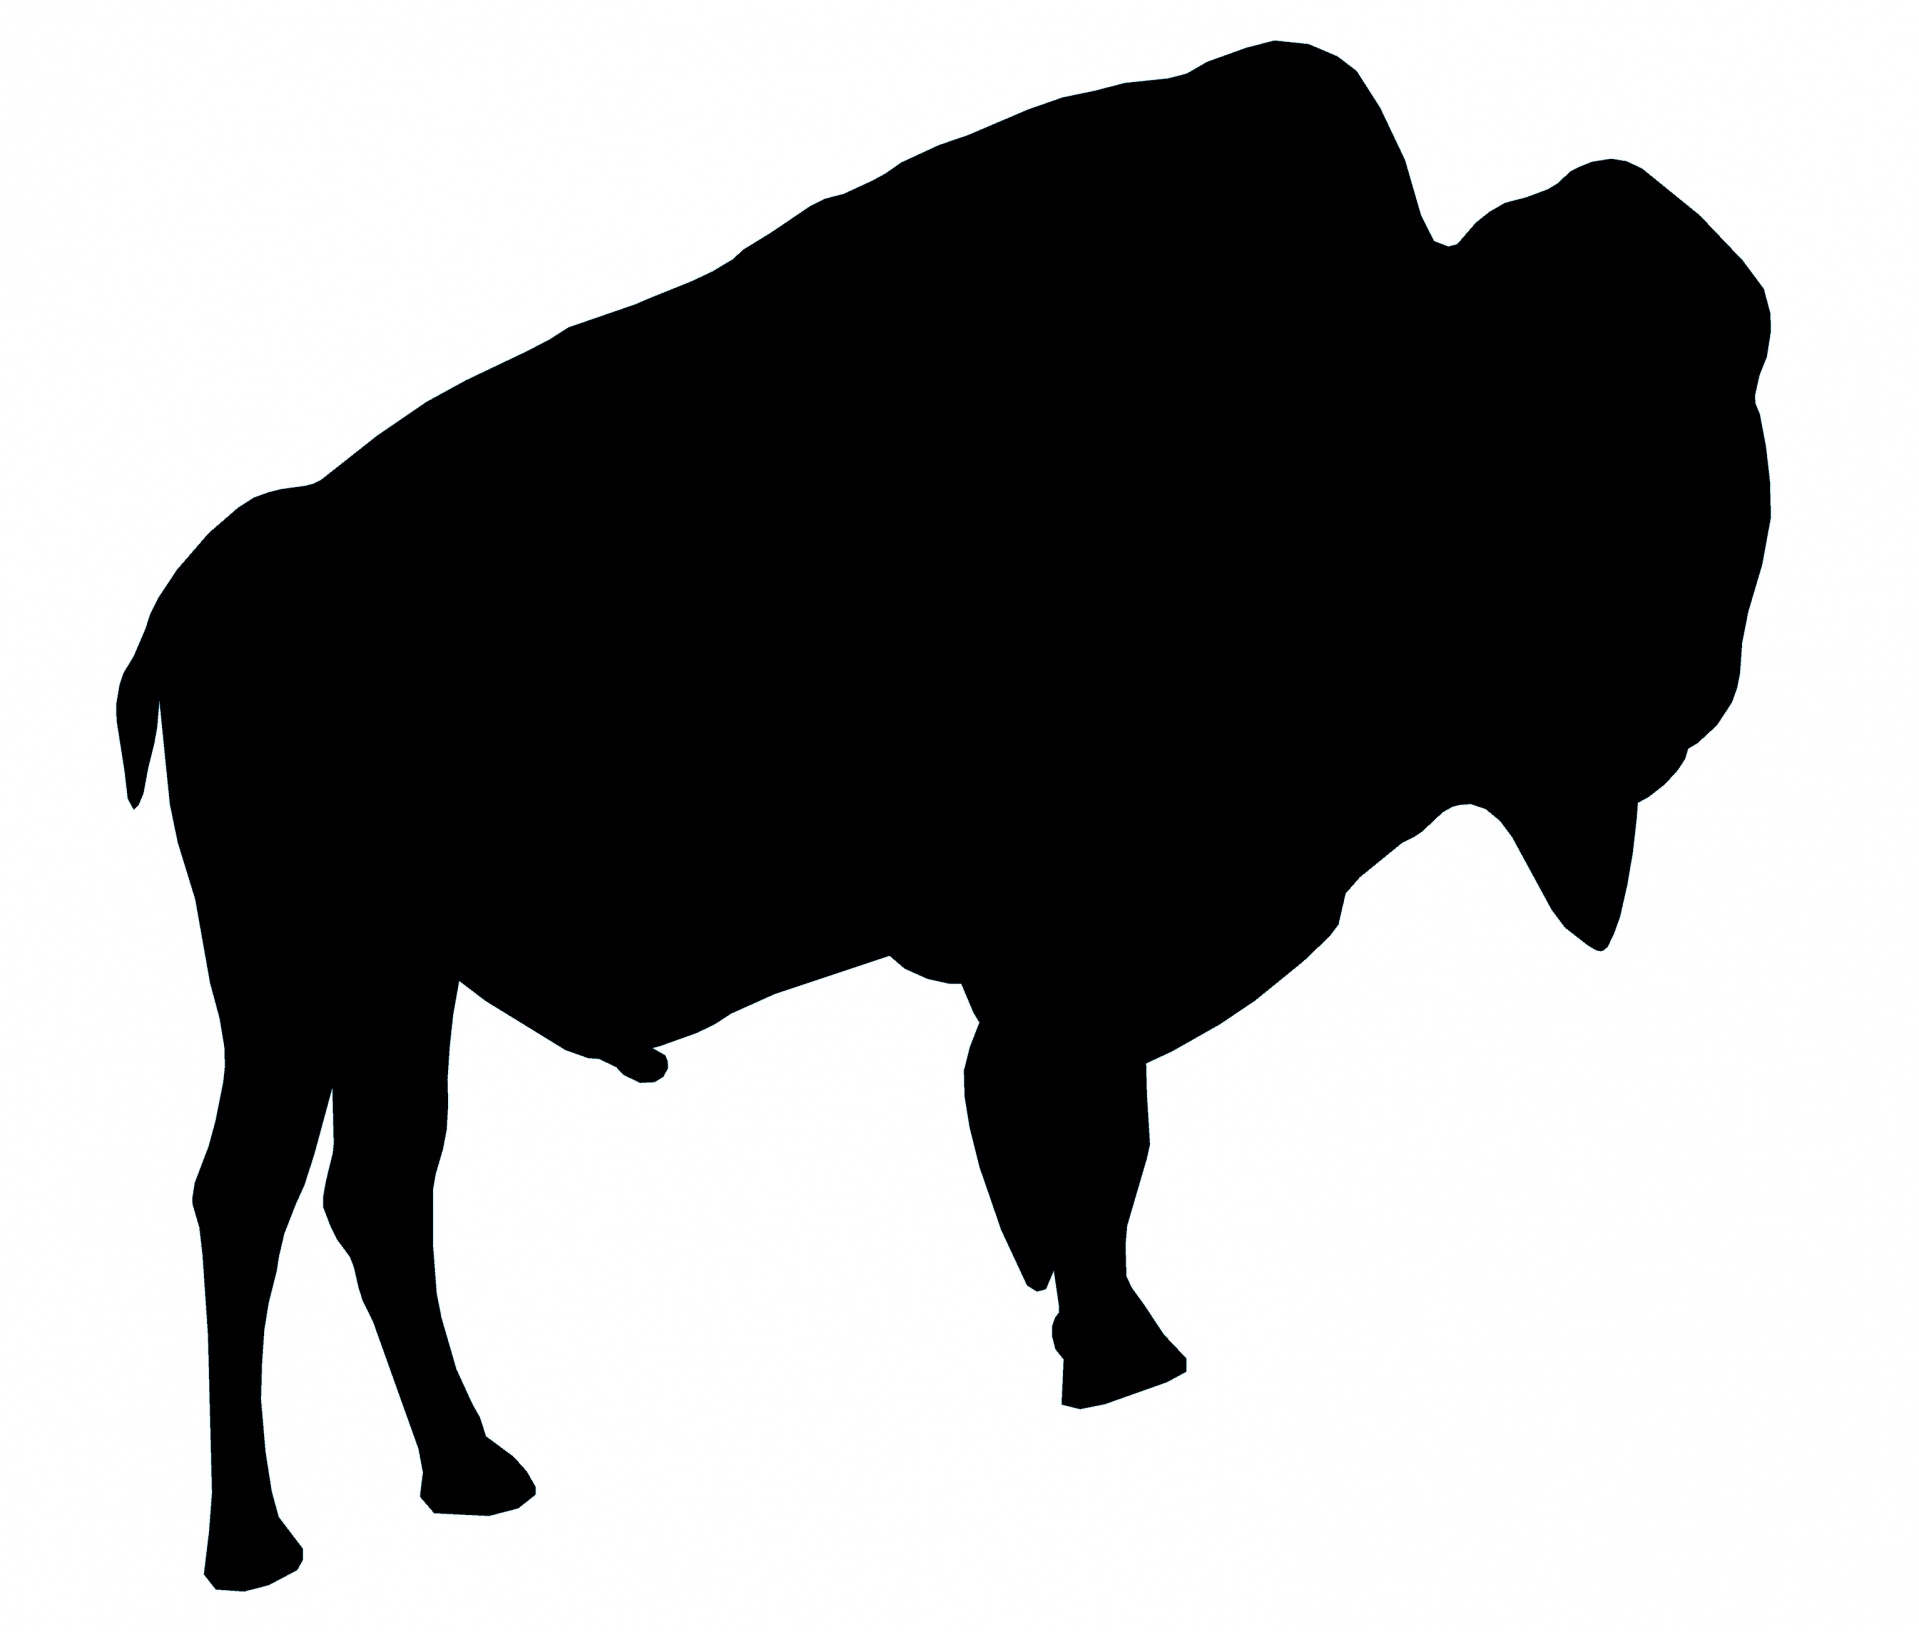 Bison Images - Public Domain Pictures - Page 1